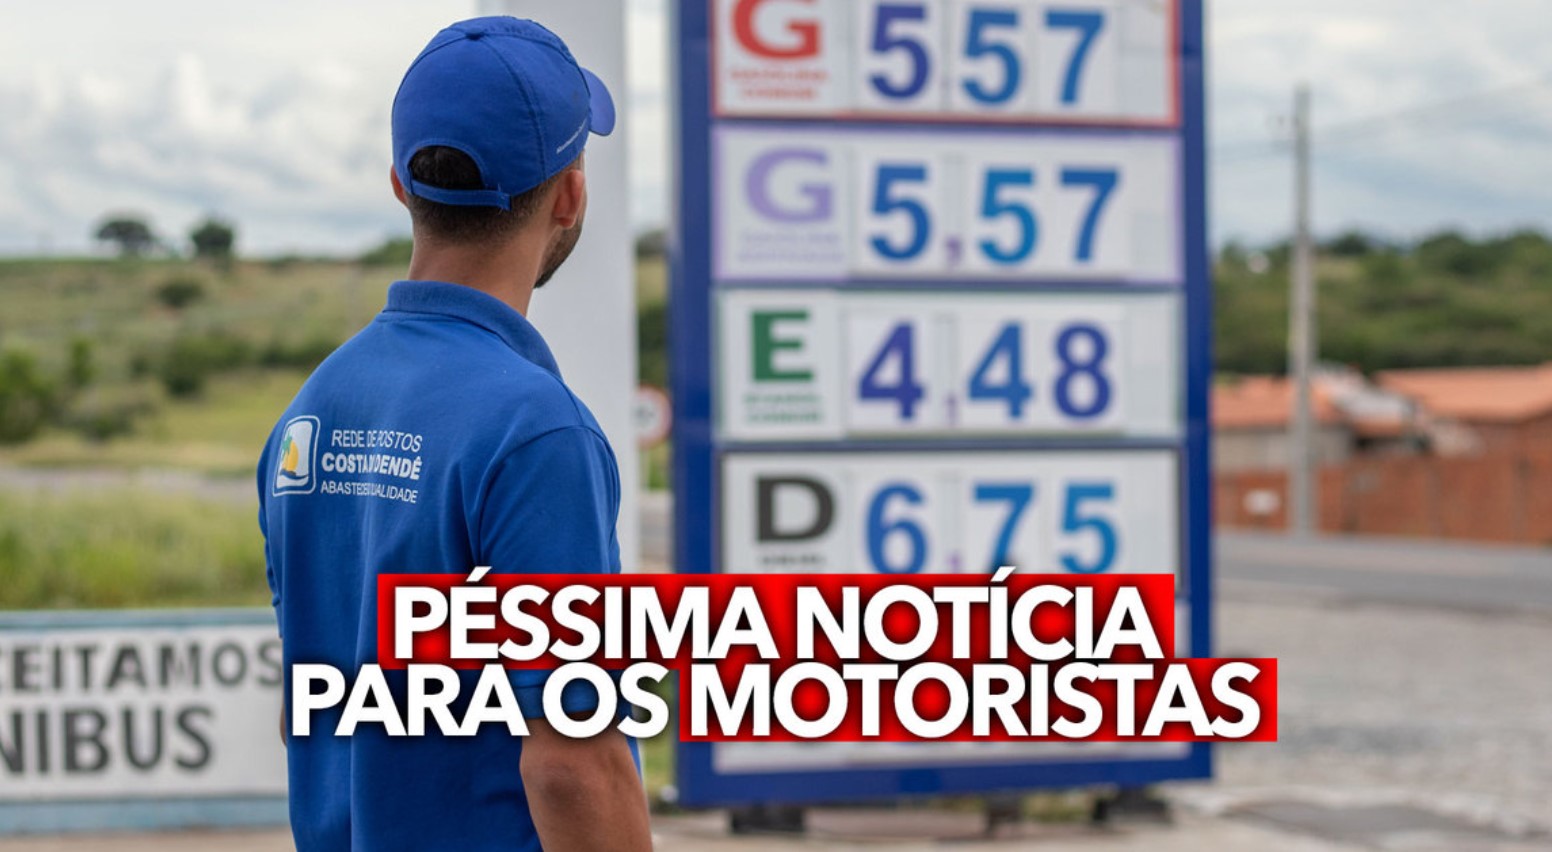 O preço da gasolina teve mais um aumento significativo no país durante a semana passada, o que afetou negativamente os motoristas. FOTO: internte.